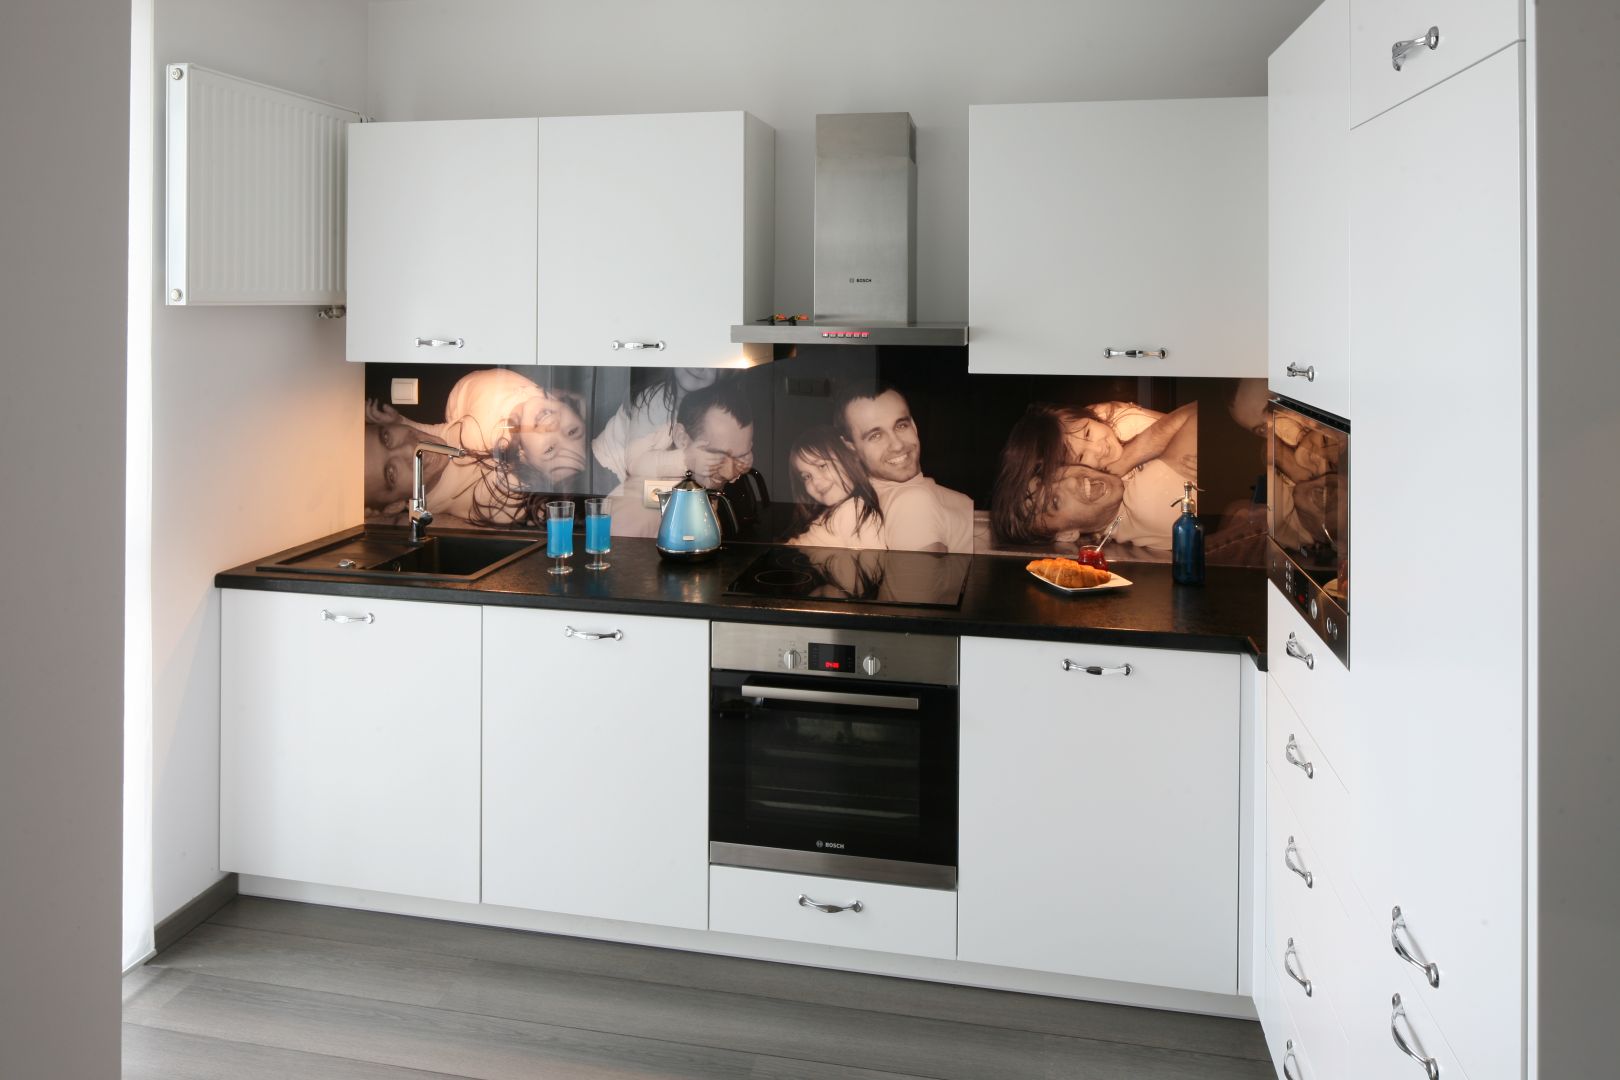 Za przezroczystą taflą można także umieścić ulubione zdjęcie lub tapetę, tworząc w kuchni niepowtarzalny klimat. Projekt: Joanna Nawrocka Fot. Bartosz Jarosz